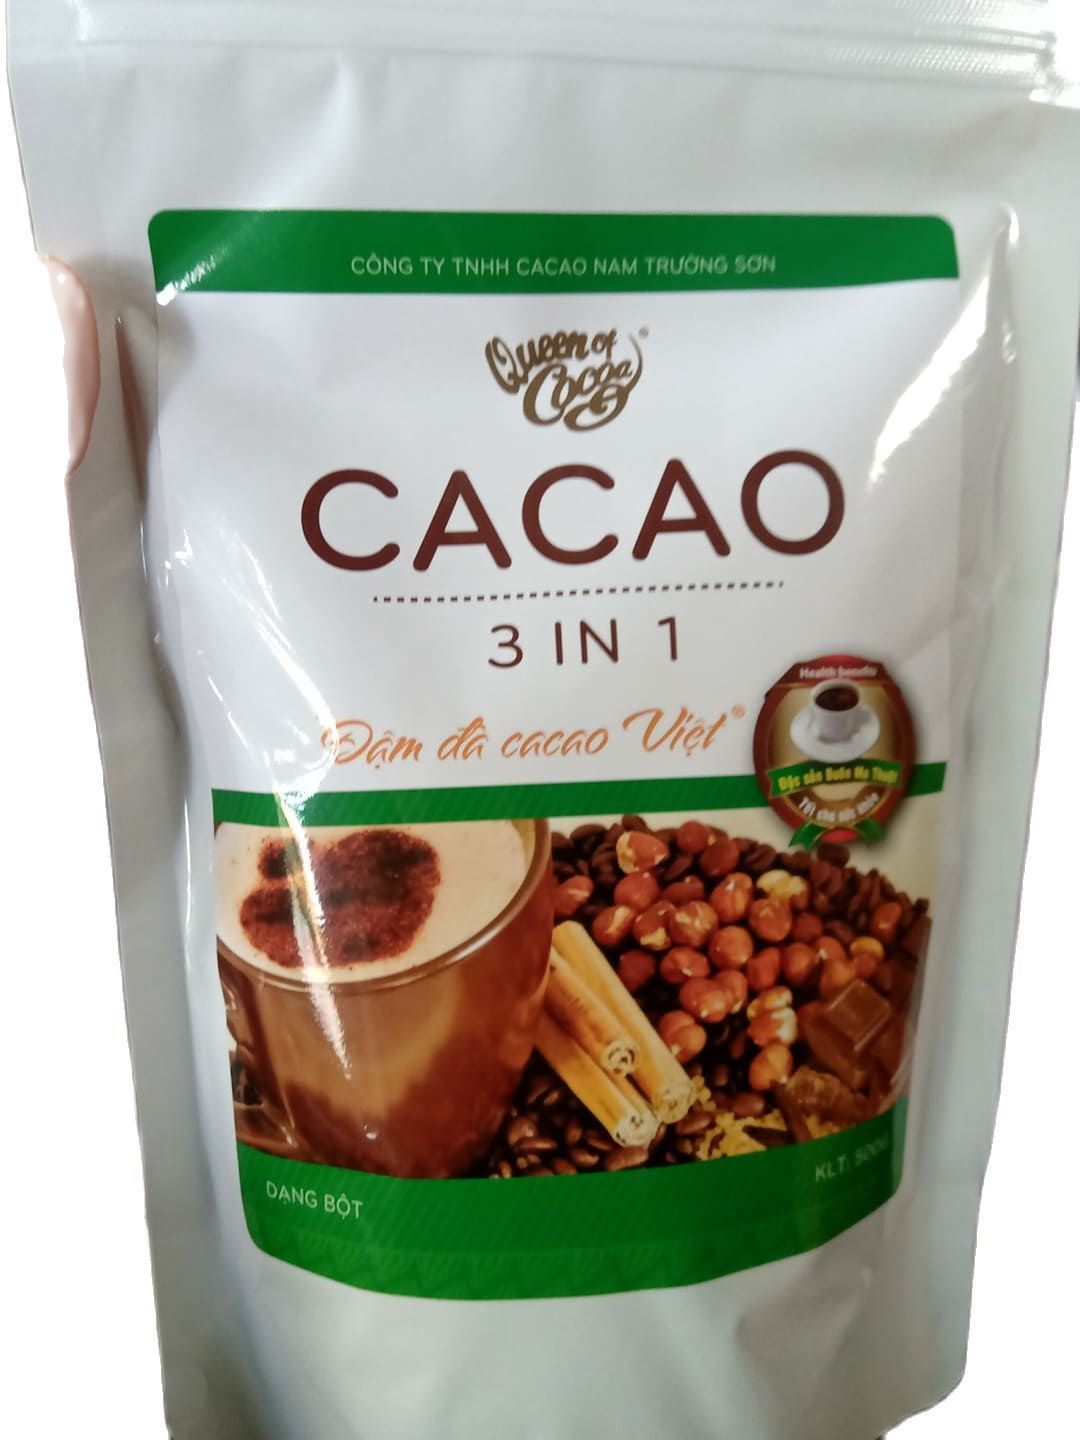 Bột cacao sữa hòa tan 3 trong 1 nam trường sơn ĐẶC SẢN BUÔN MÊ ThUỘT